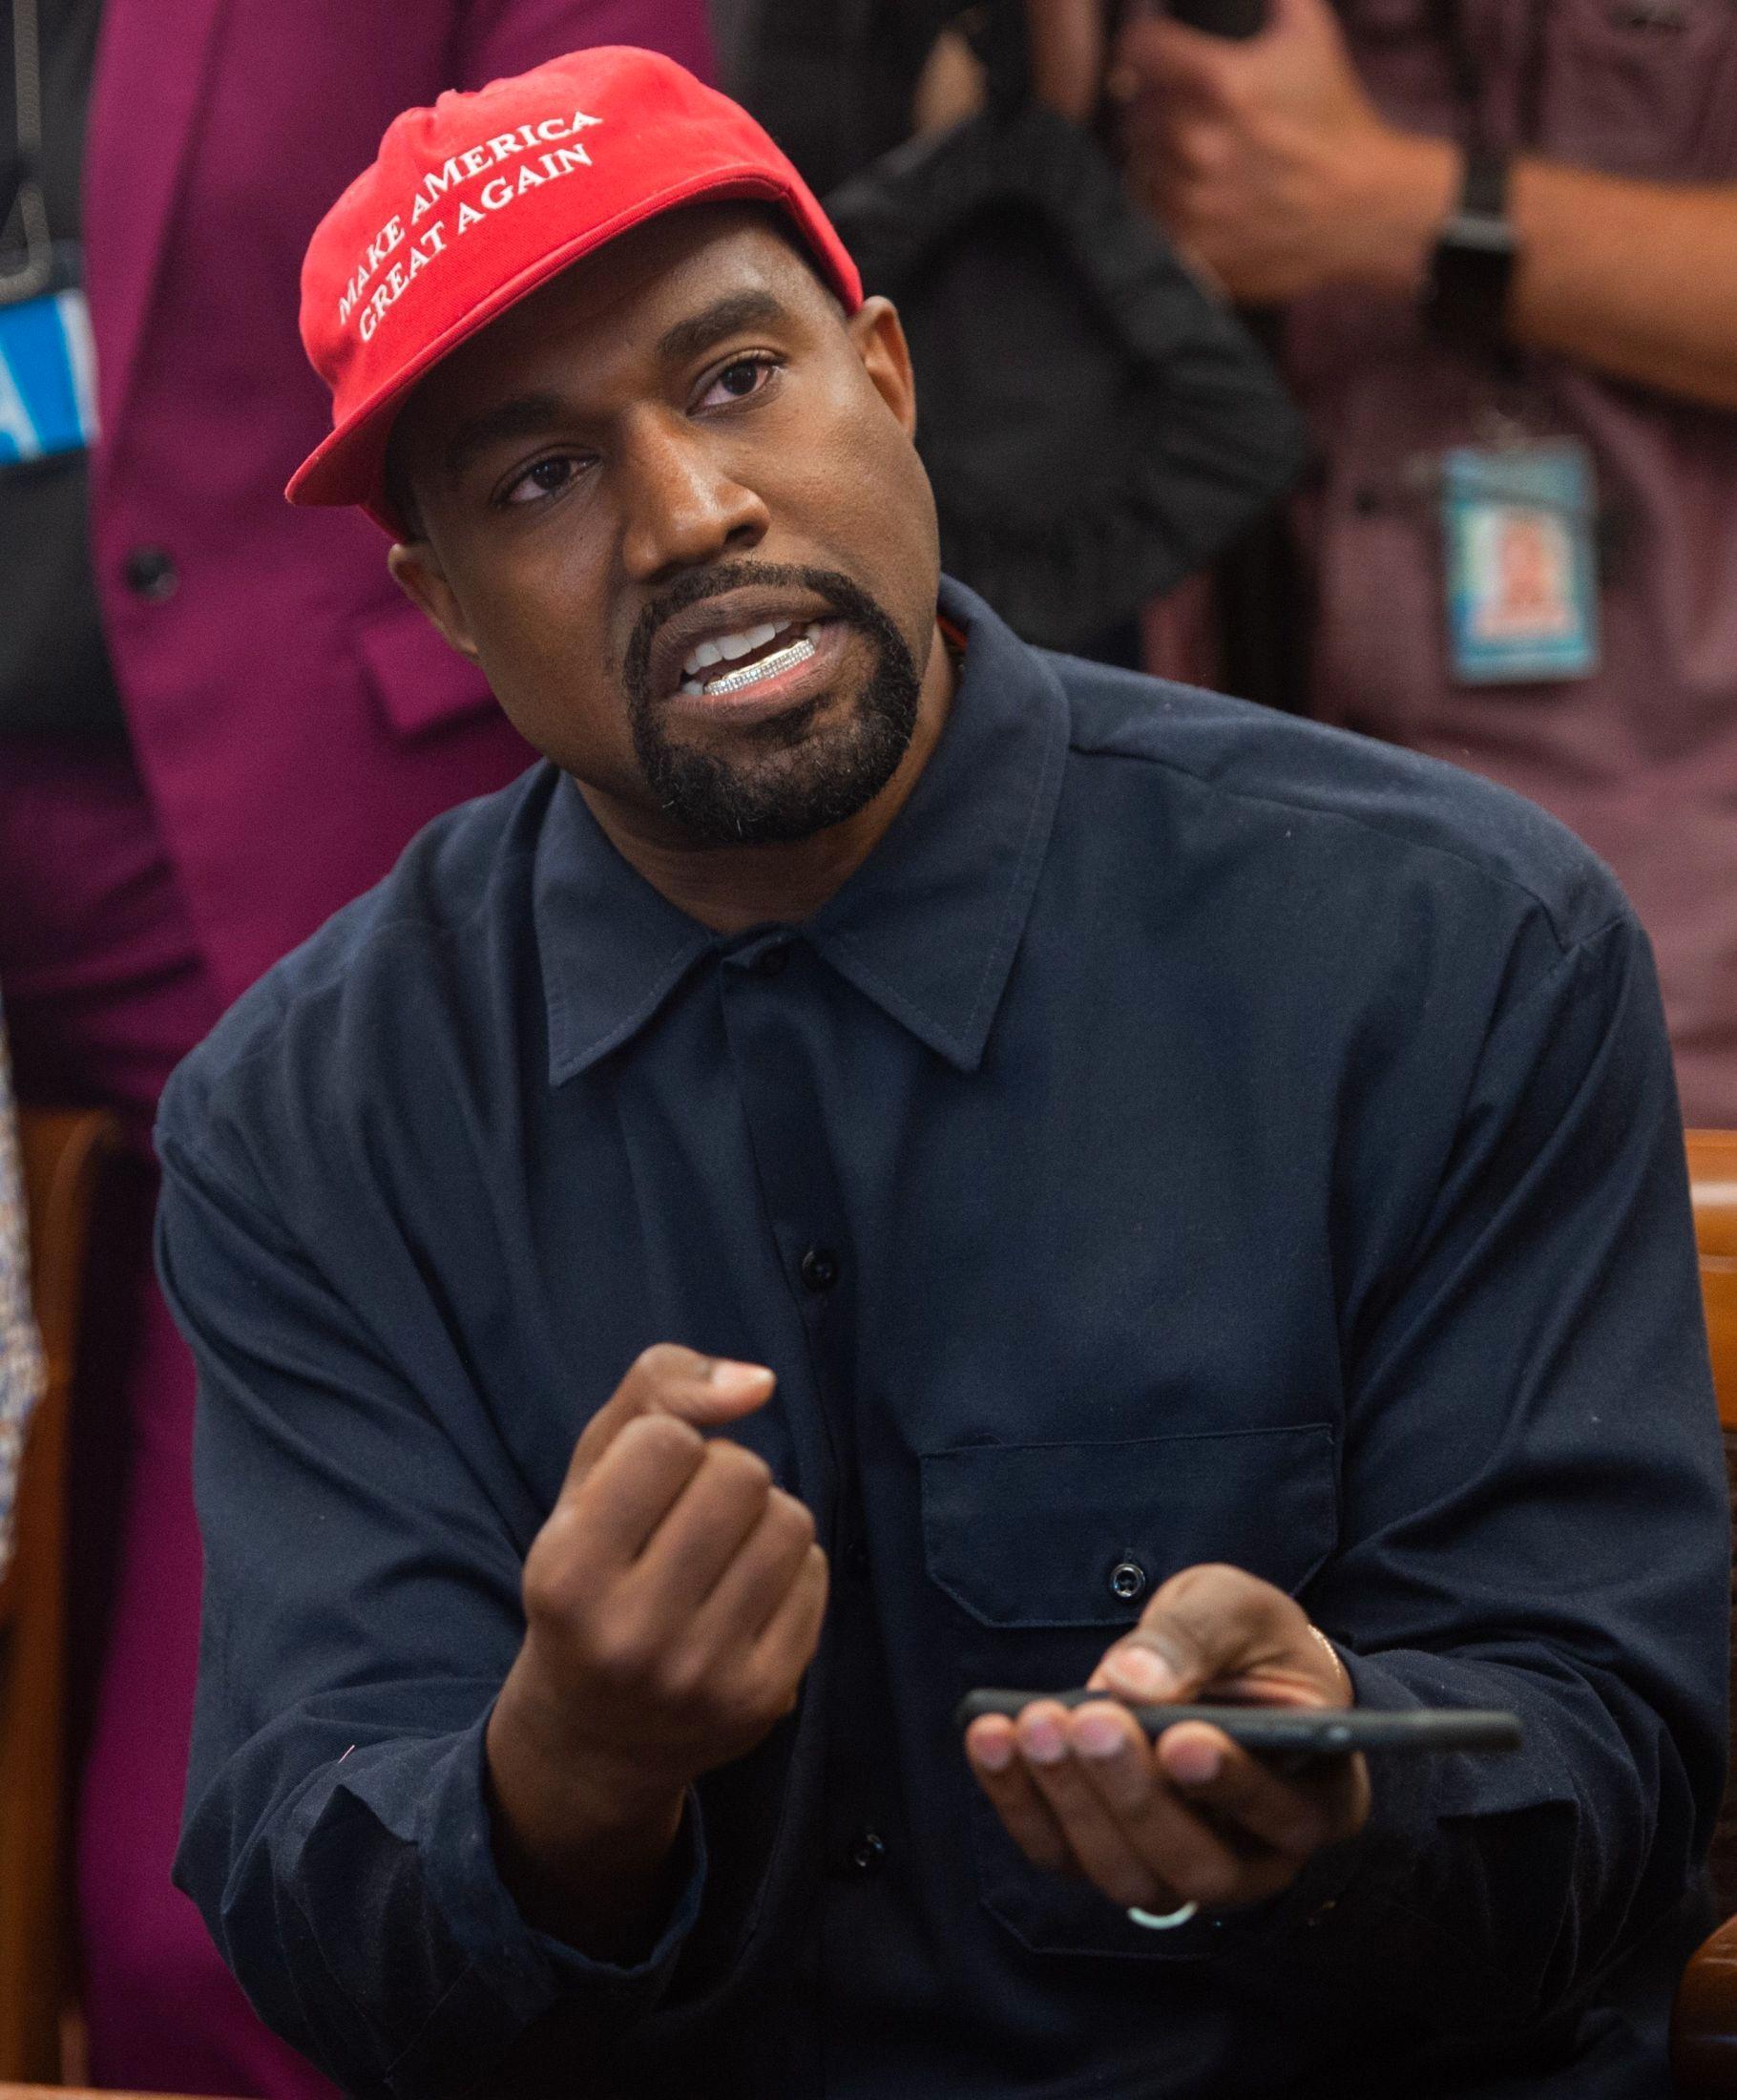 CAPSEN PÅ PLASS: Kanye West med president Donald Trumps kampanje-caps med påskriften «Make America Great Again». Foto: AFP